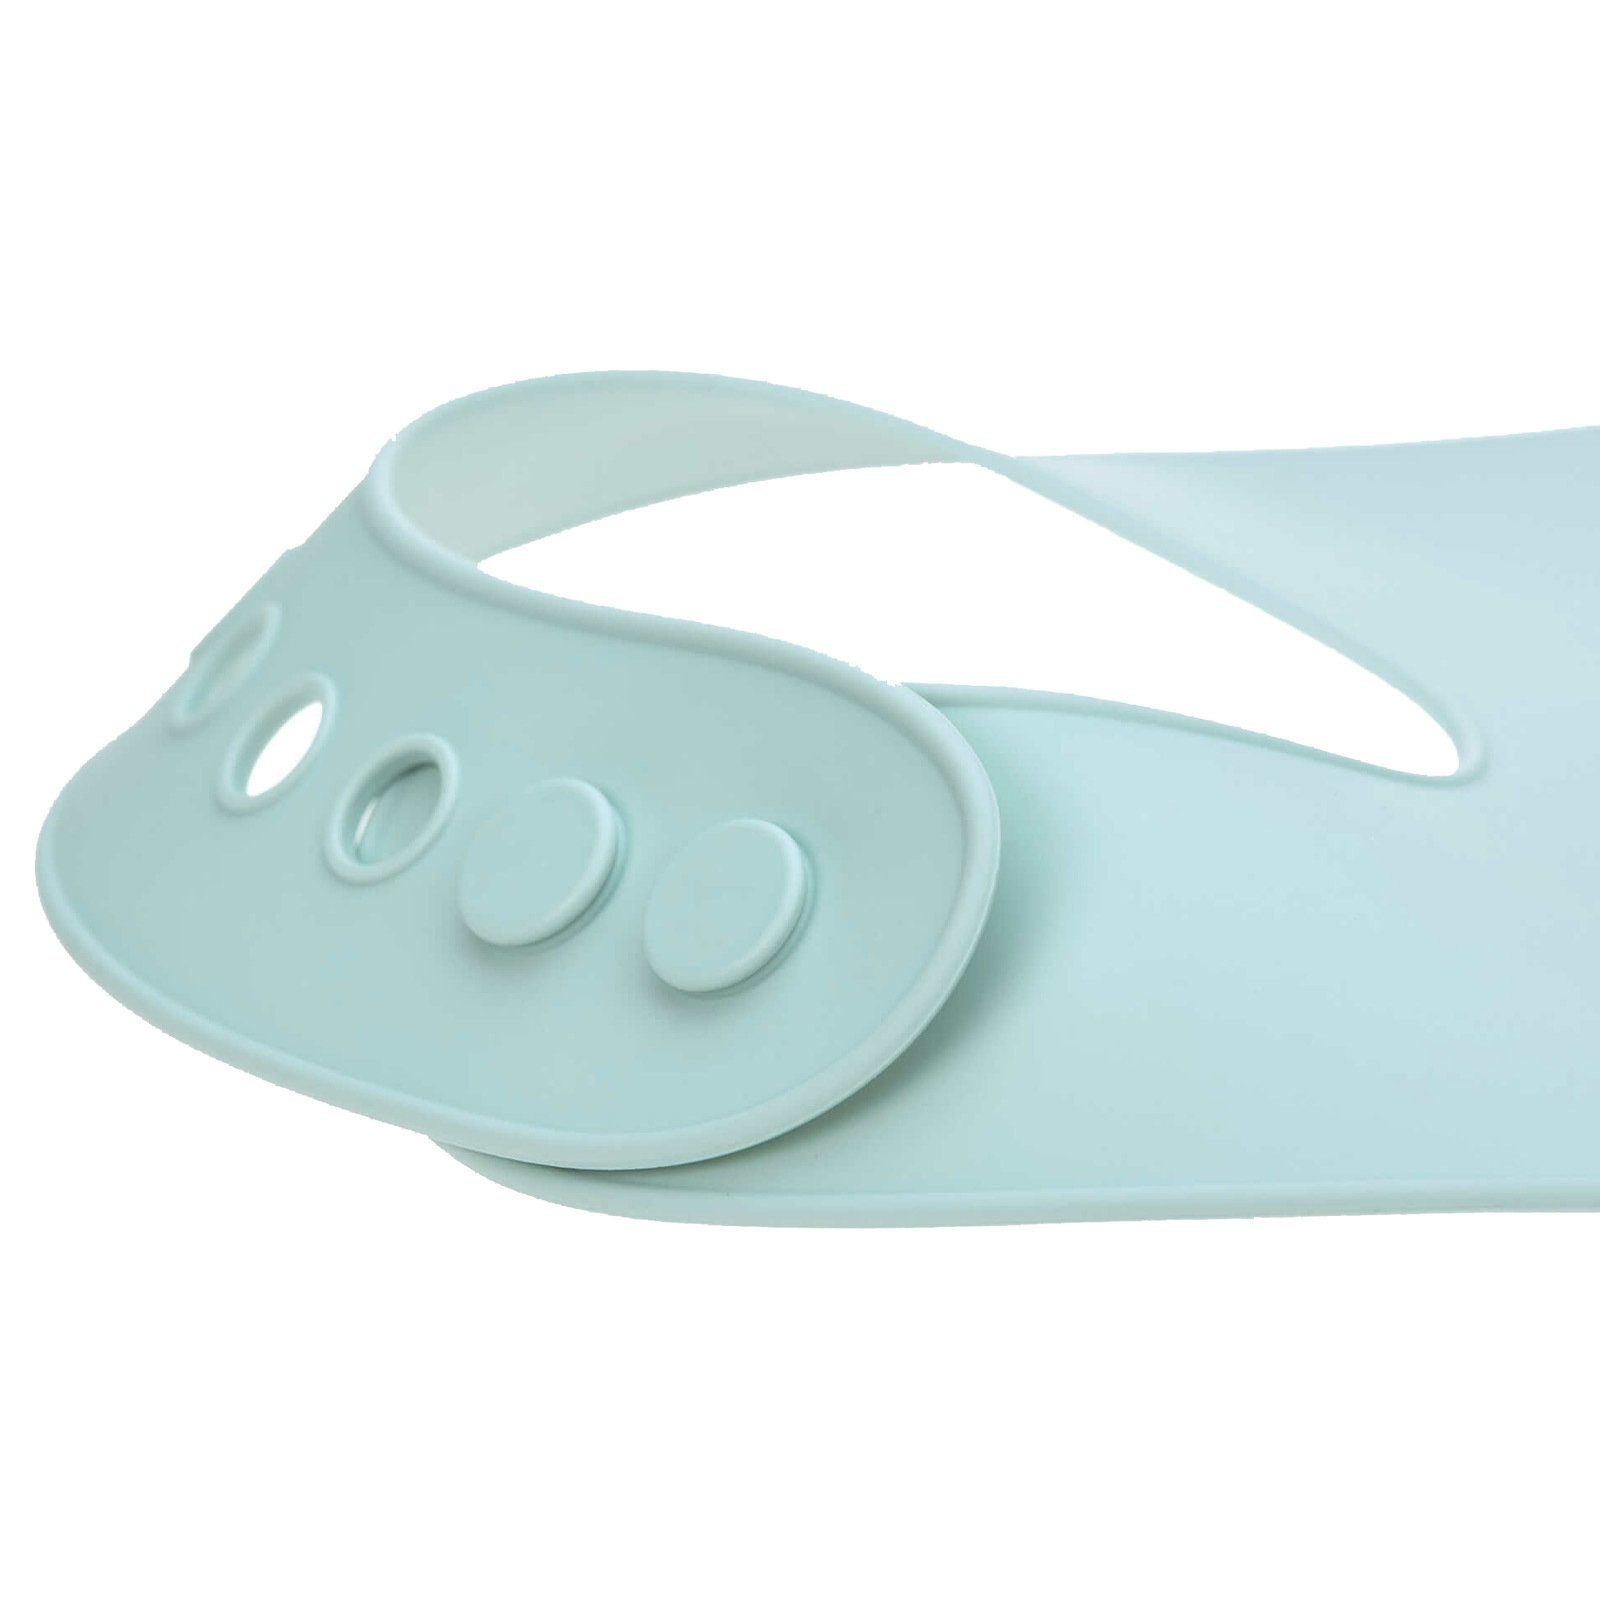 LÄSSIG Kindergeschirr-Set Little Chums Silikon (3-tlg), Lätzchen blau mit Geschirrset Silikon Maus